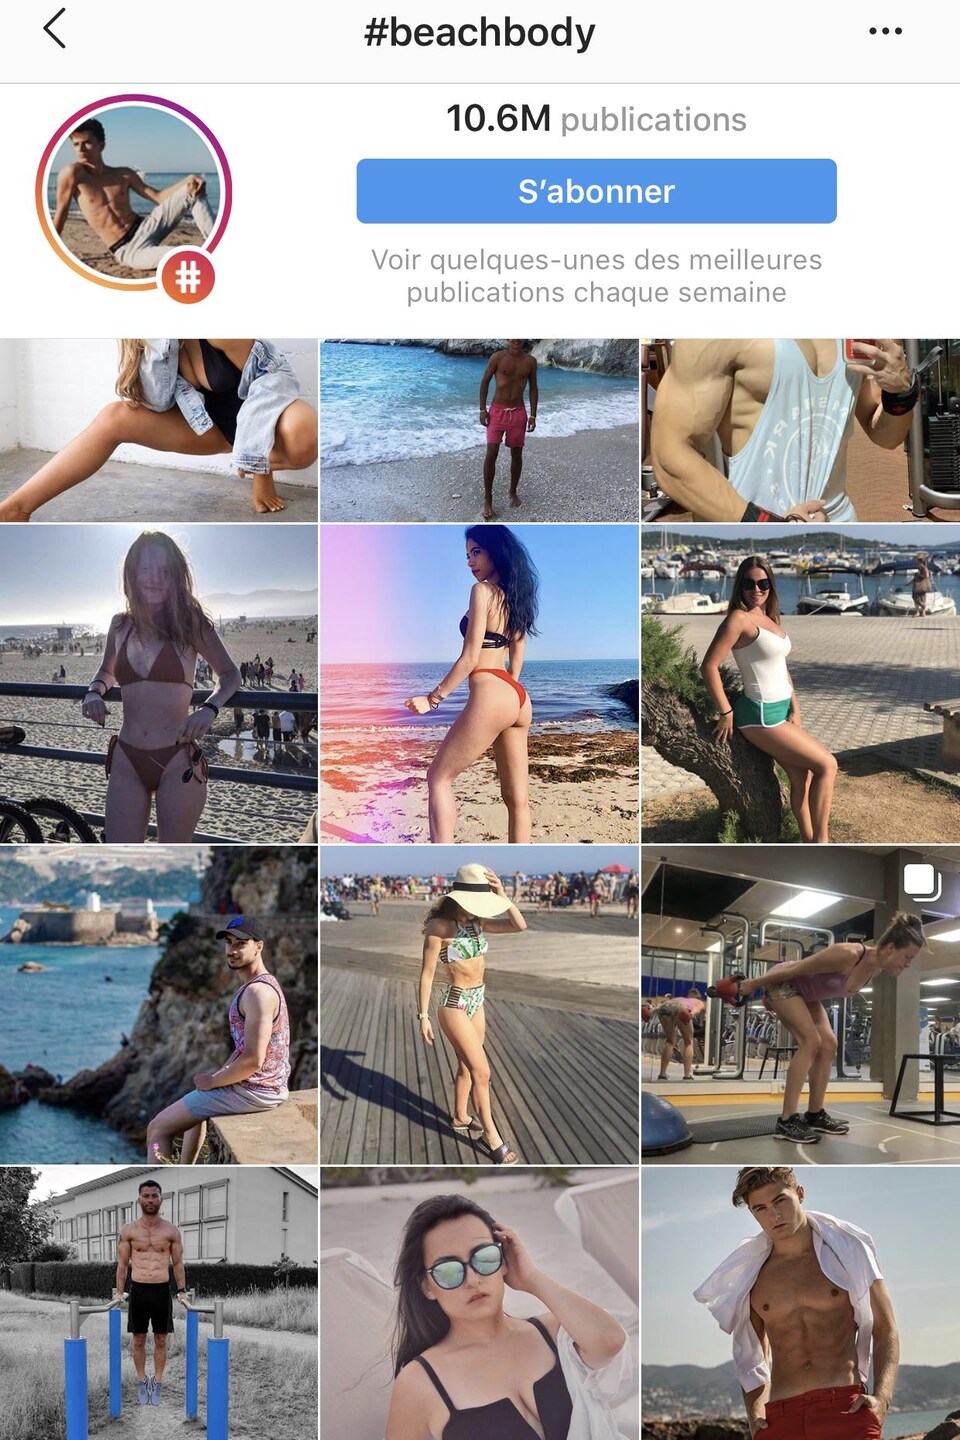 Capture d'écran de plusieurs photos disposées sur l'interface de l'application Instagram, montrant des hommes et des femmes, pour la plupart en maillot de bain, sur la plage, répondant aux standards de beauté.